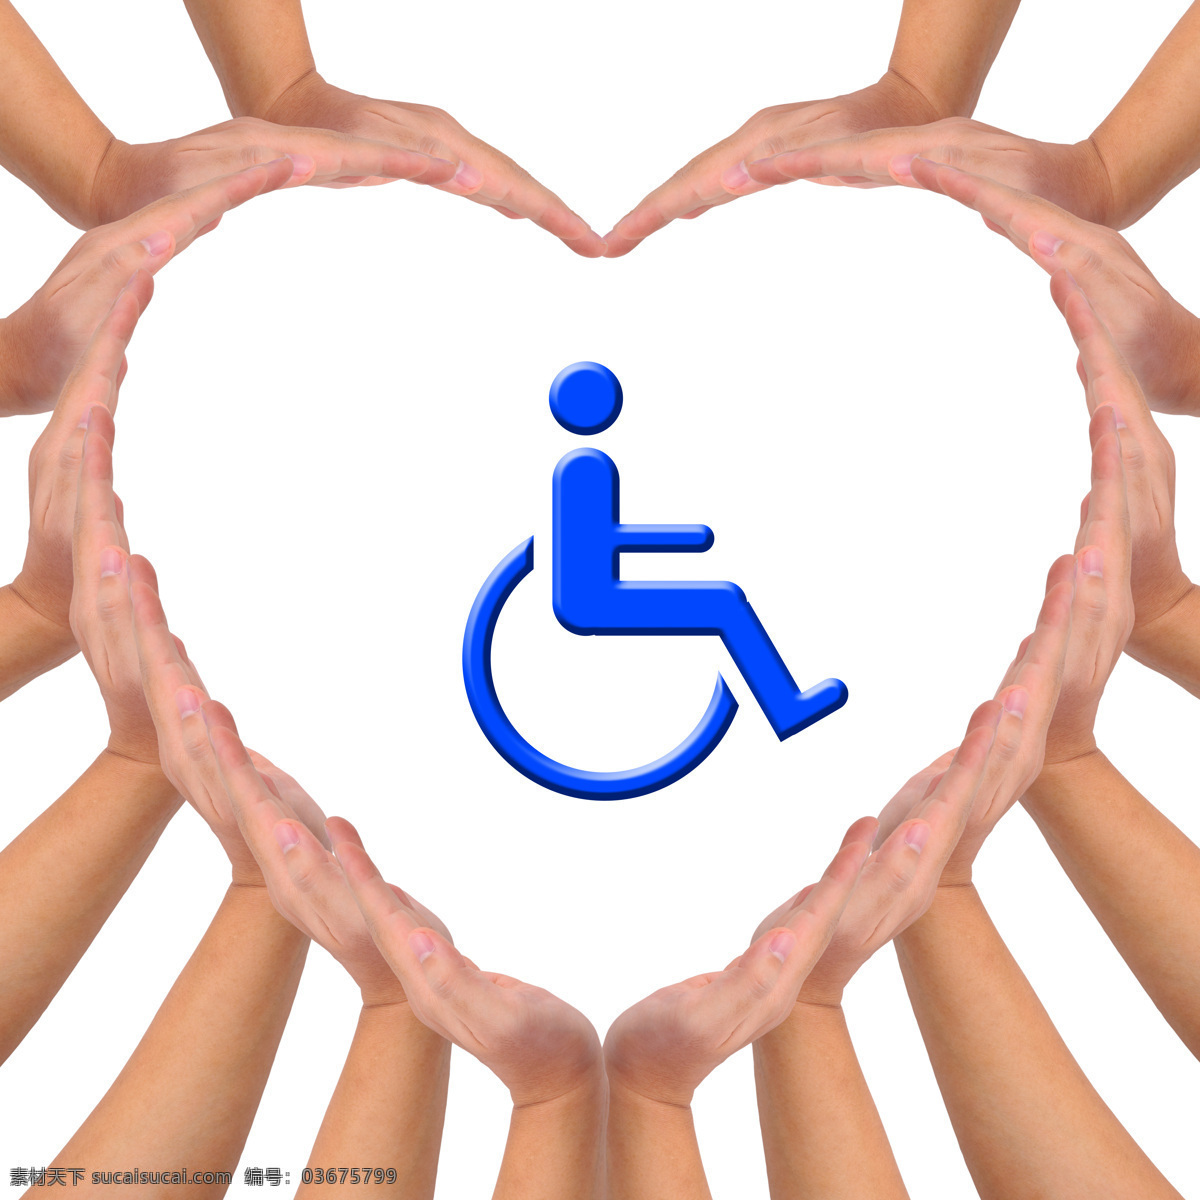 关爱 残疾人 爱心 桃心 关爱残疾人 残疾人标志 爱心手势 轮椅主题 其他人物 人物图片